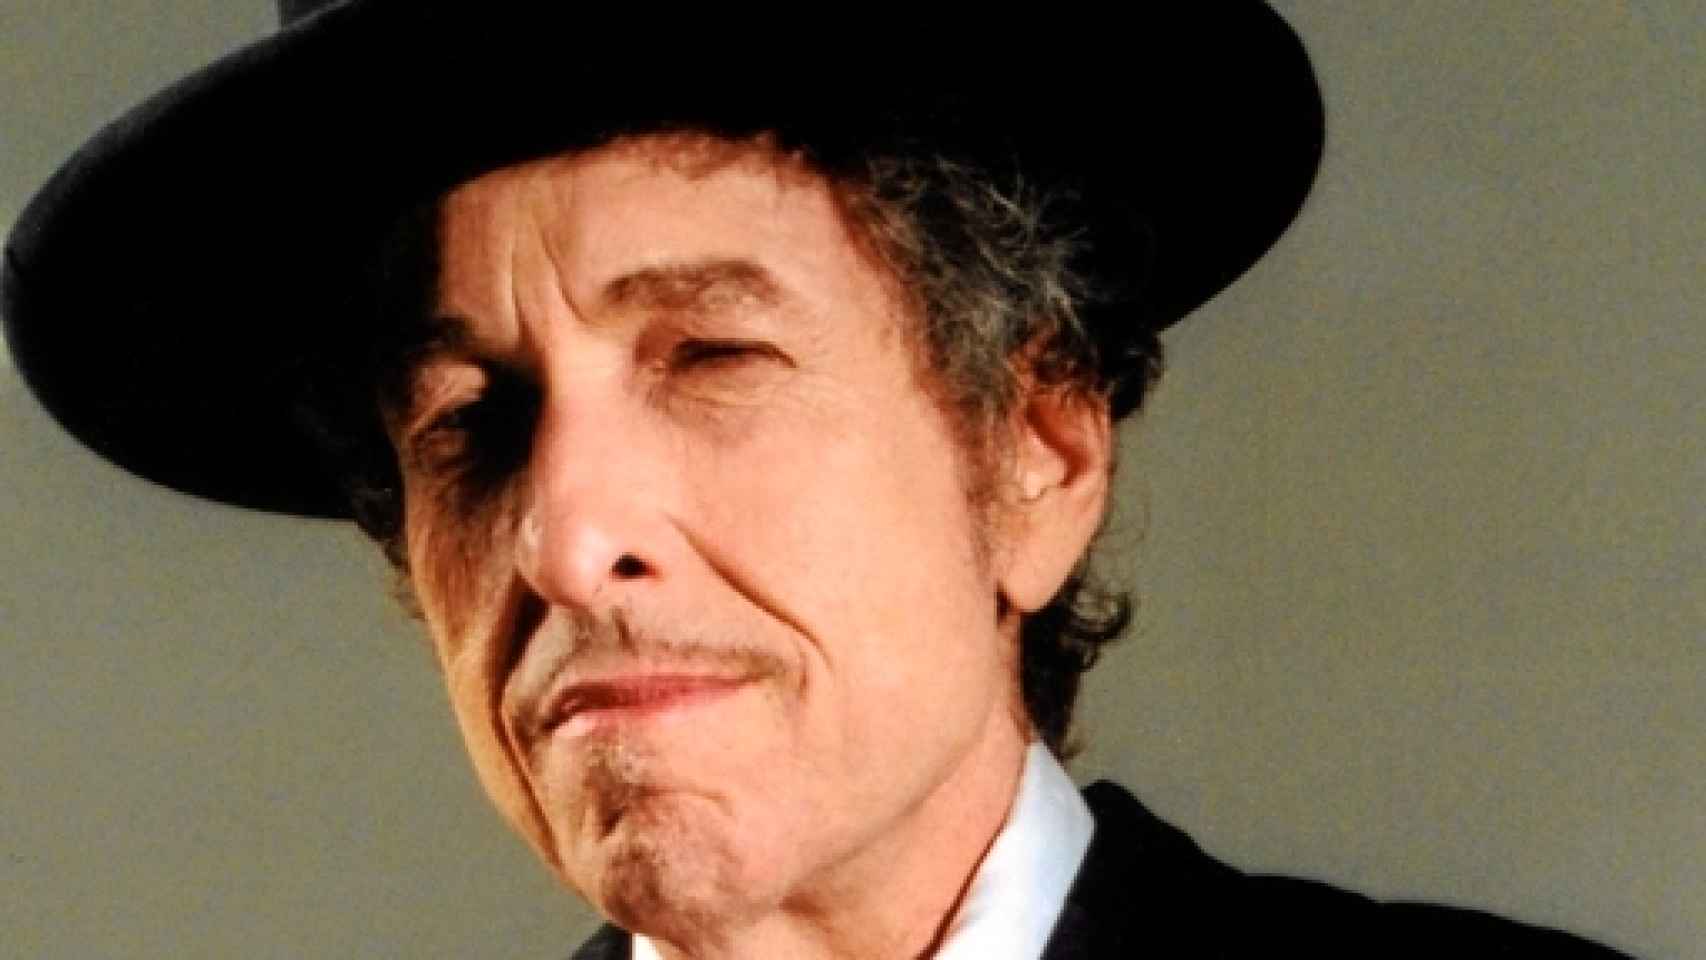 Image: Bob Dylan toca solo para ti